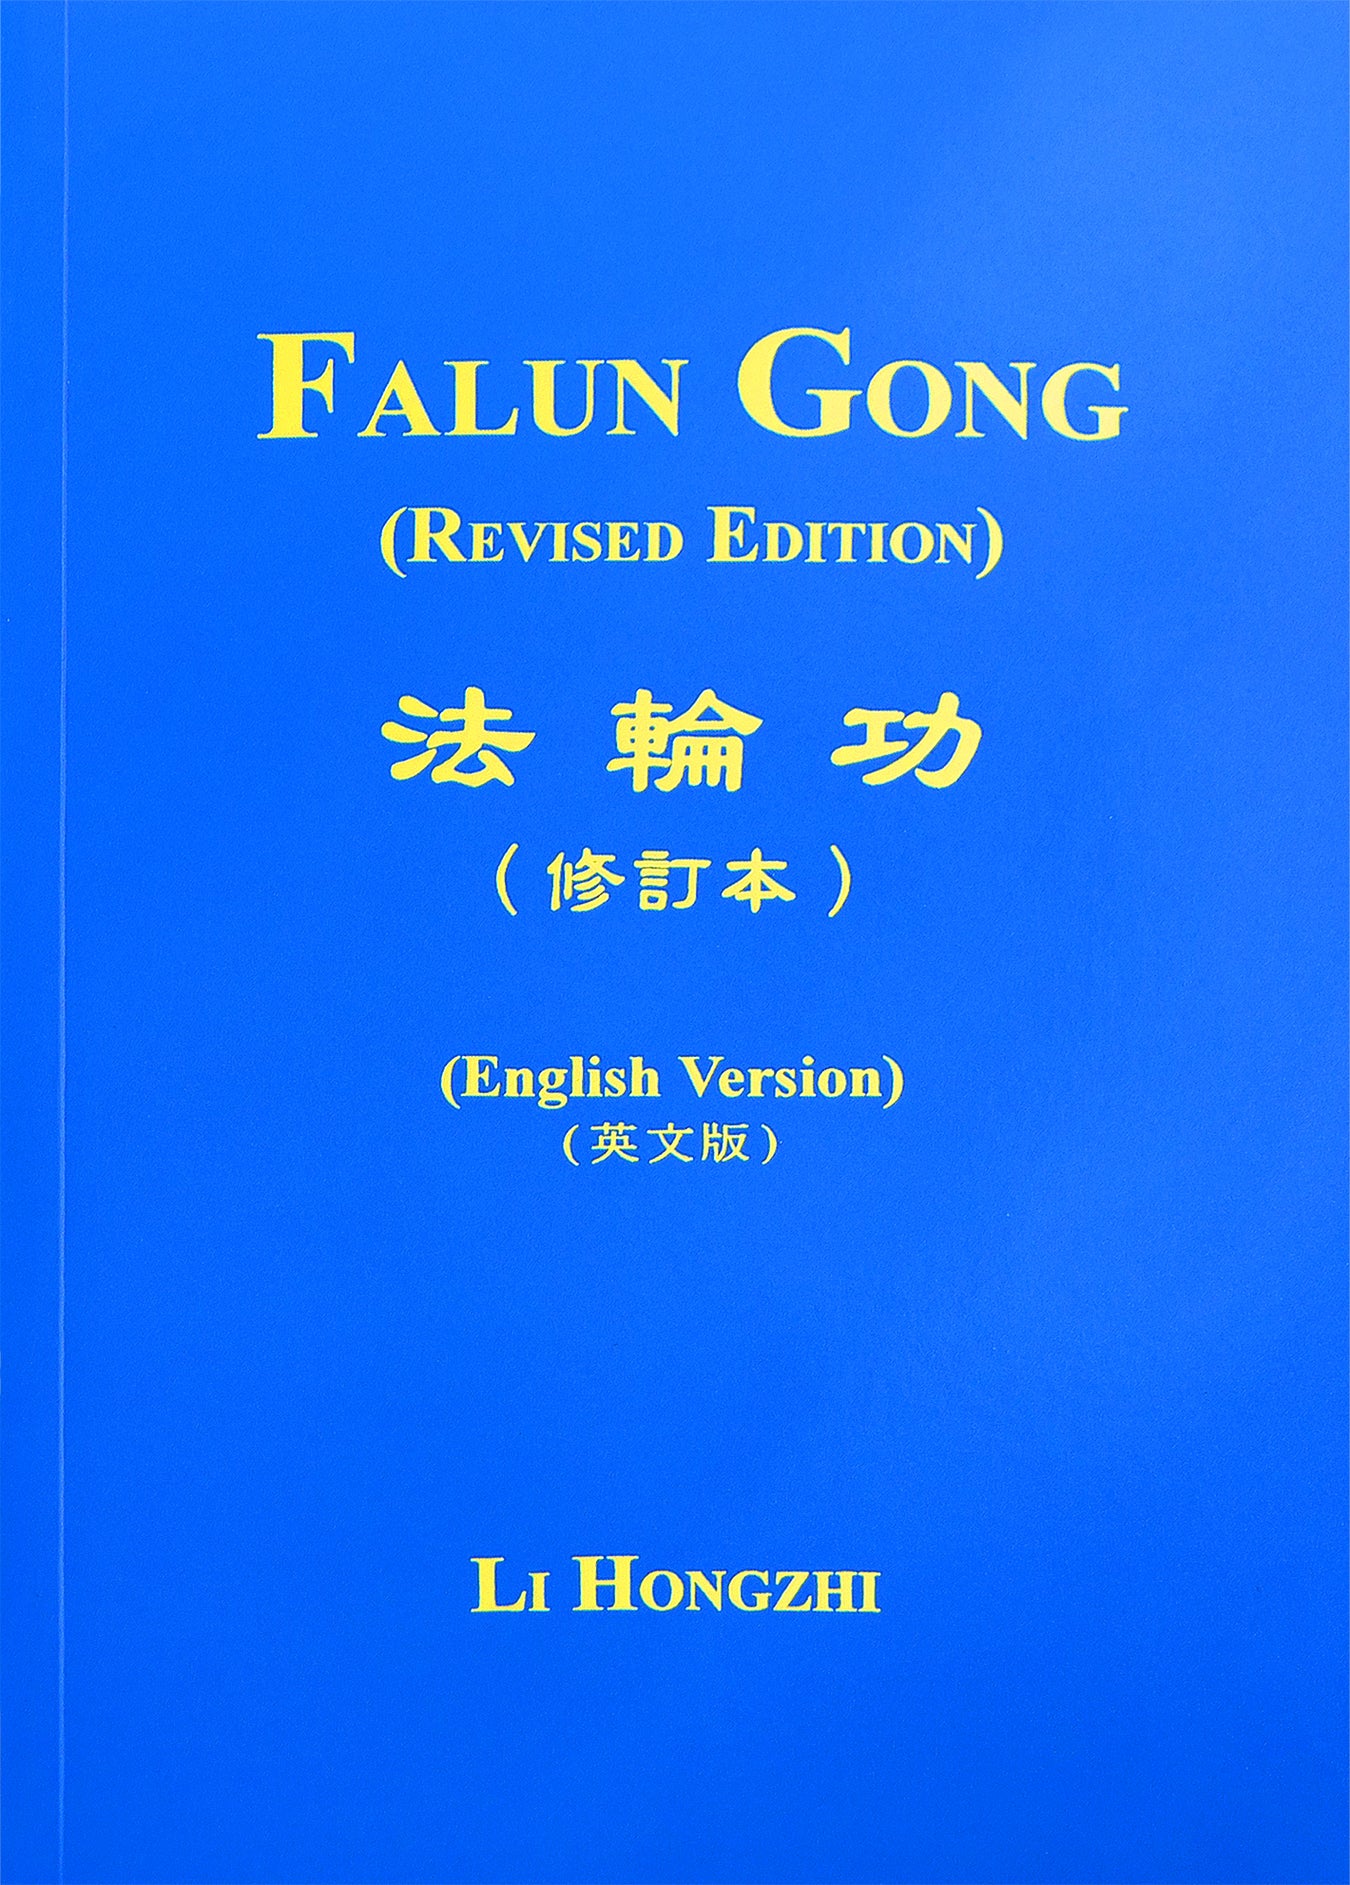 Falun Gong -The Introductory Book of Falun Dafa